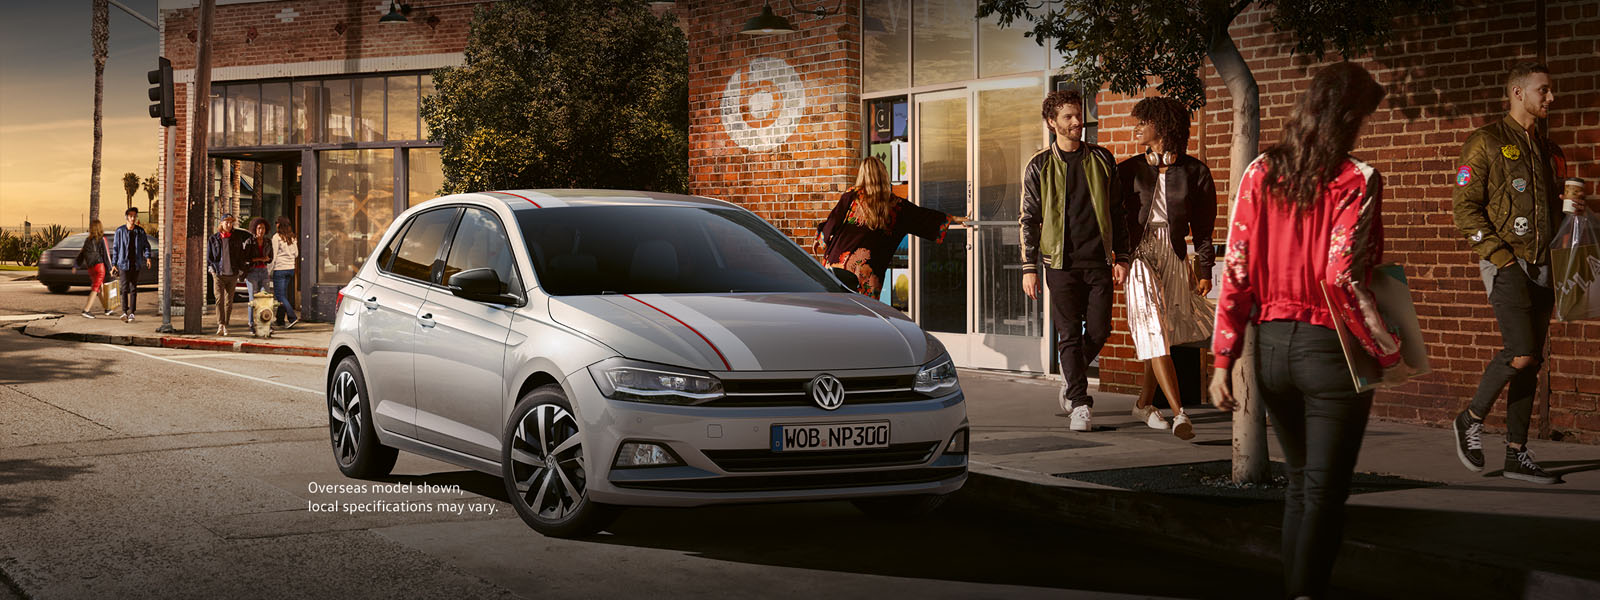 Volkswagen polo e brochure download free